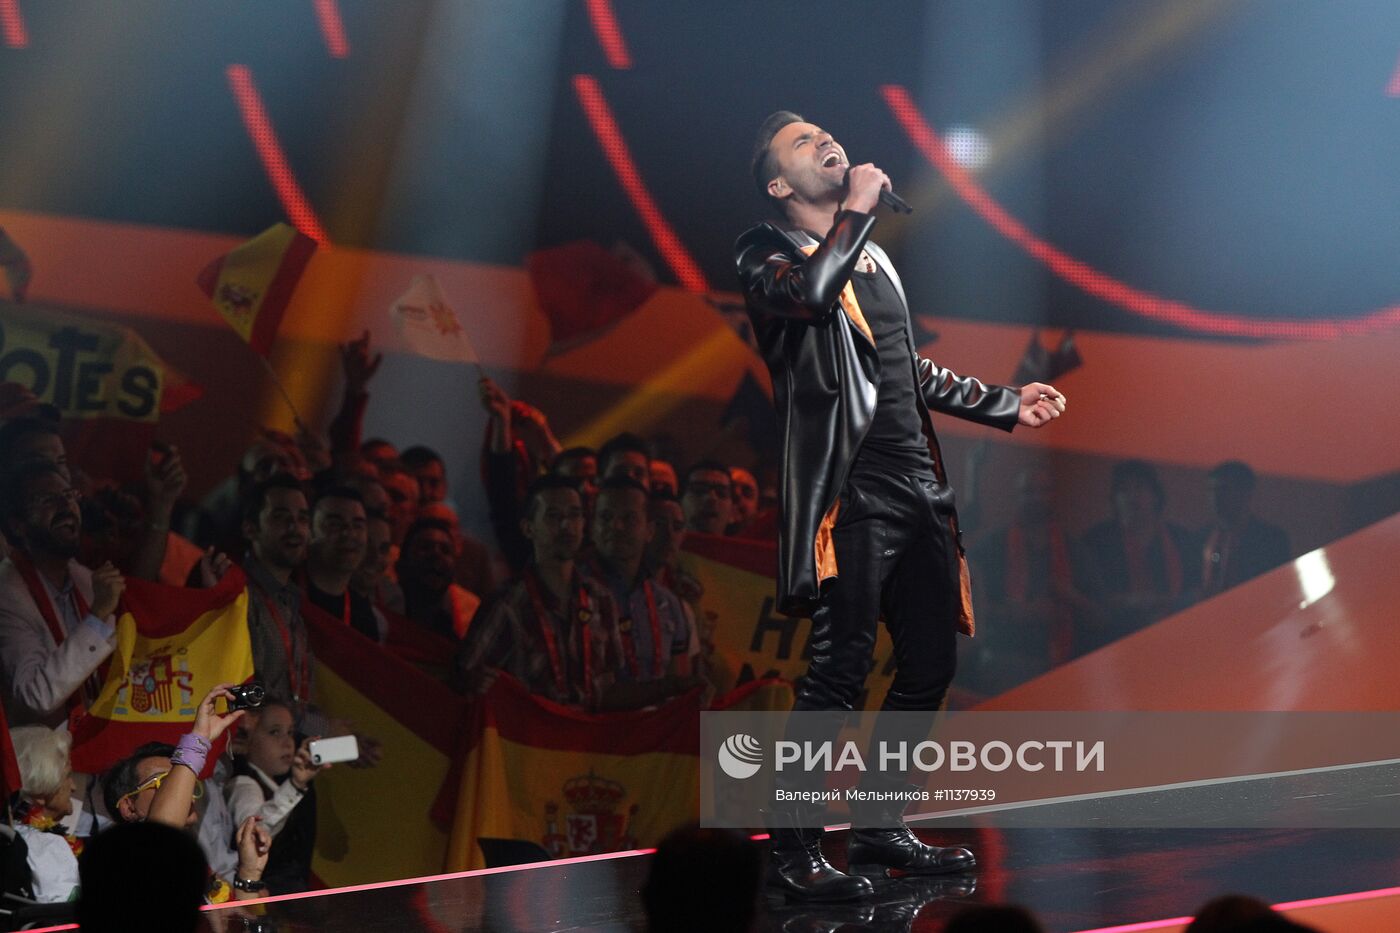 Музыкальный конкурс "Евровидение 2012". Финал